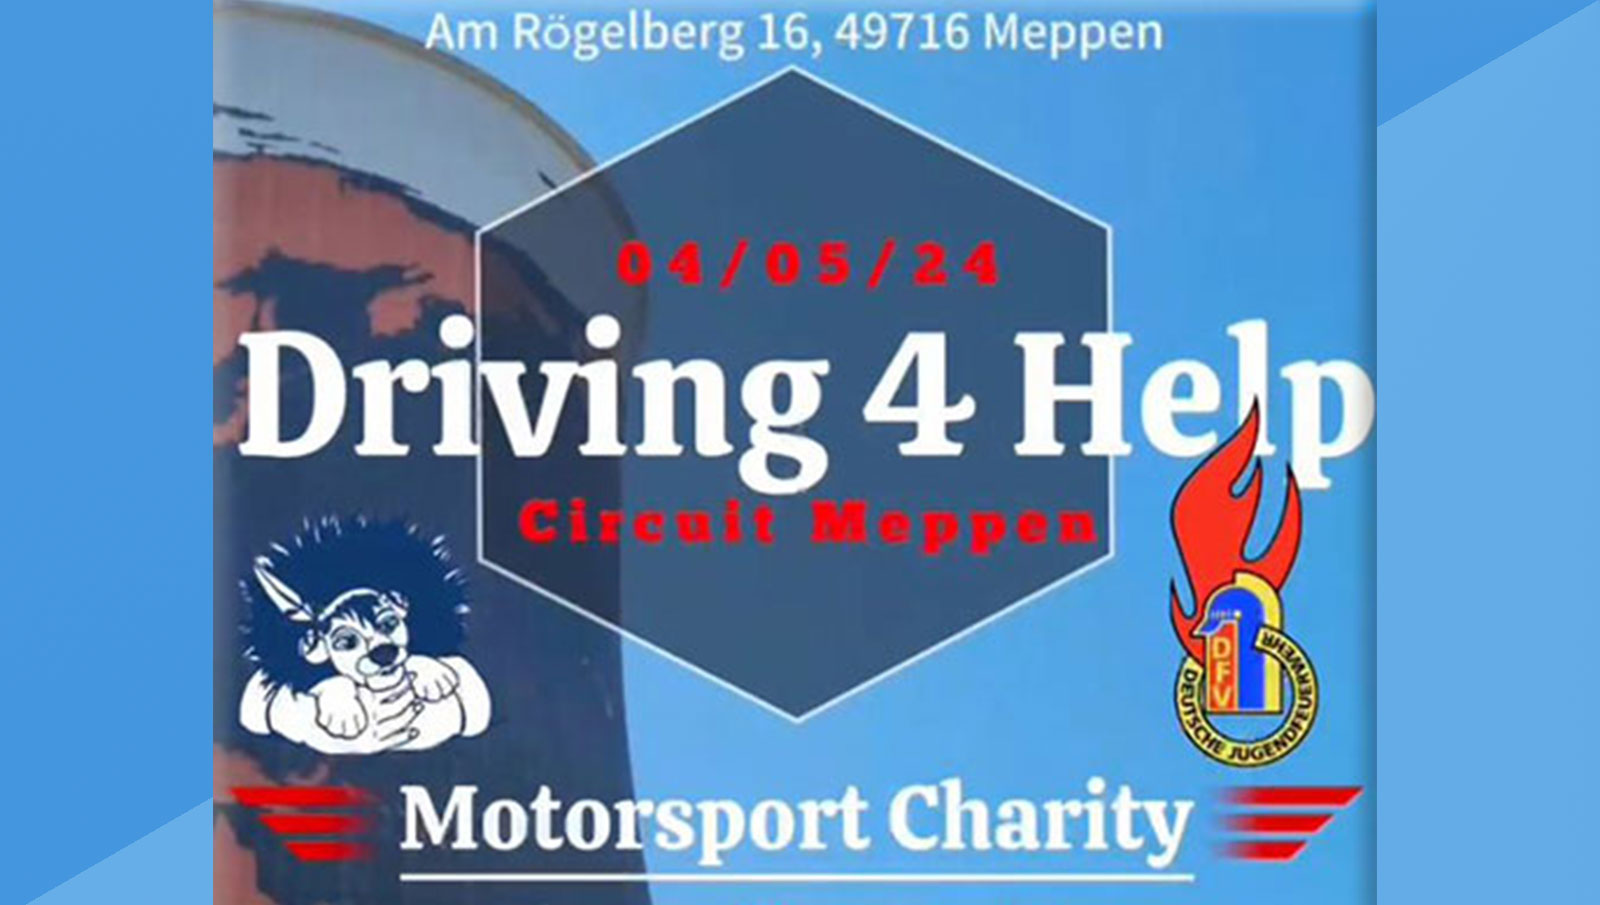 Wir für Carlotta Sonderauktion Motorsport Charity Event in Meppen